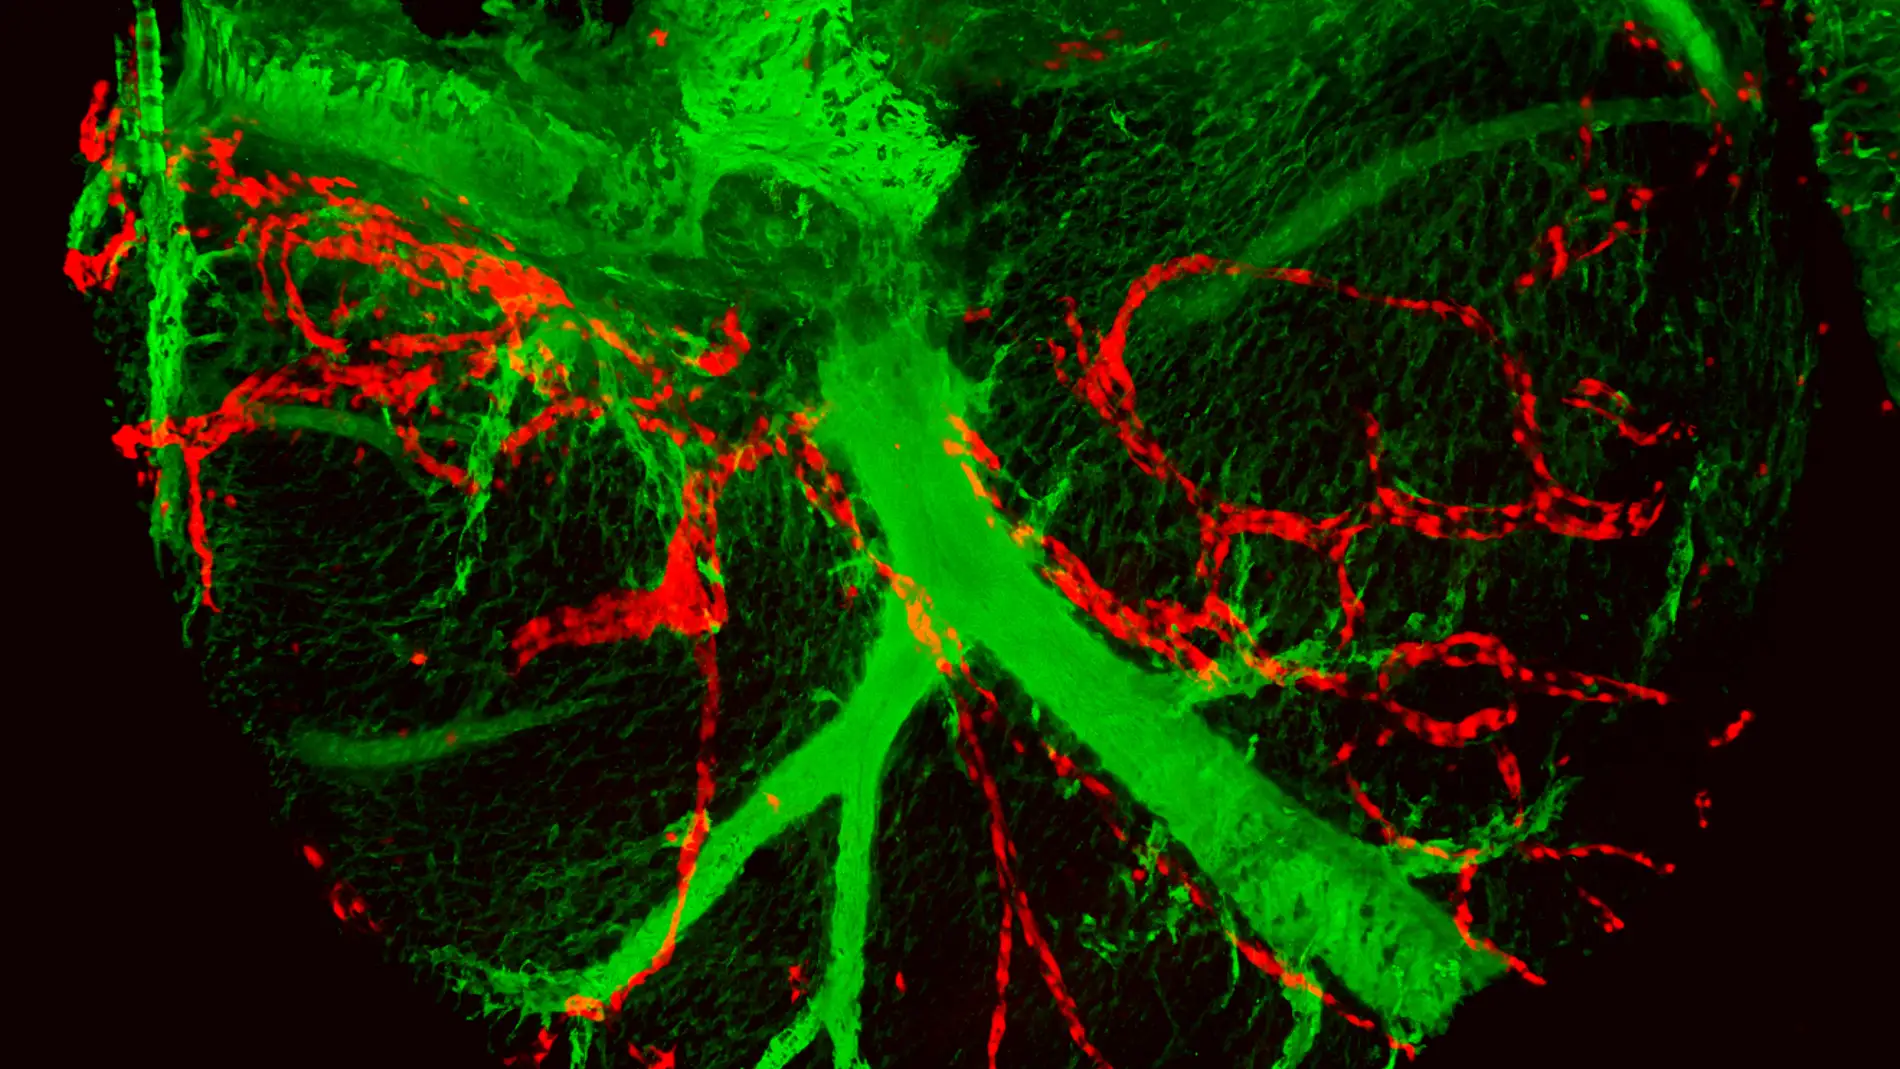 En verde, las arterias coronarias del corazón y, en rojo, los descendientes de una única célula al endotelio de los vasos linfáticos coronarios